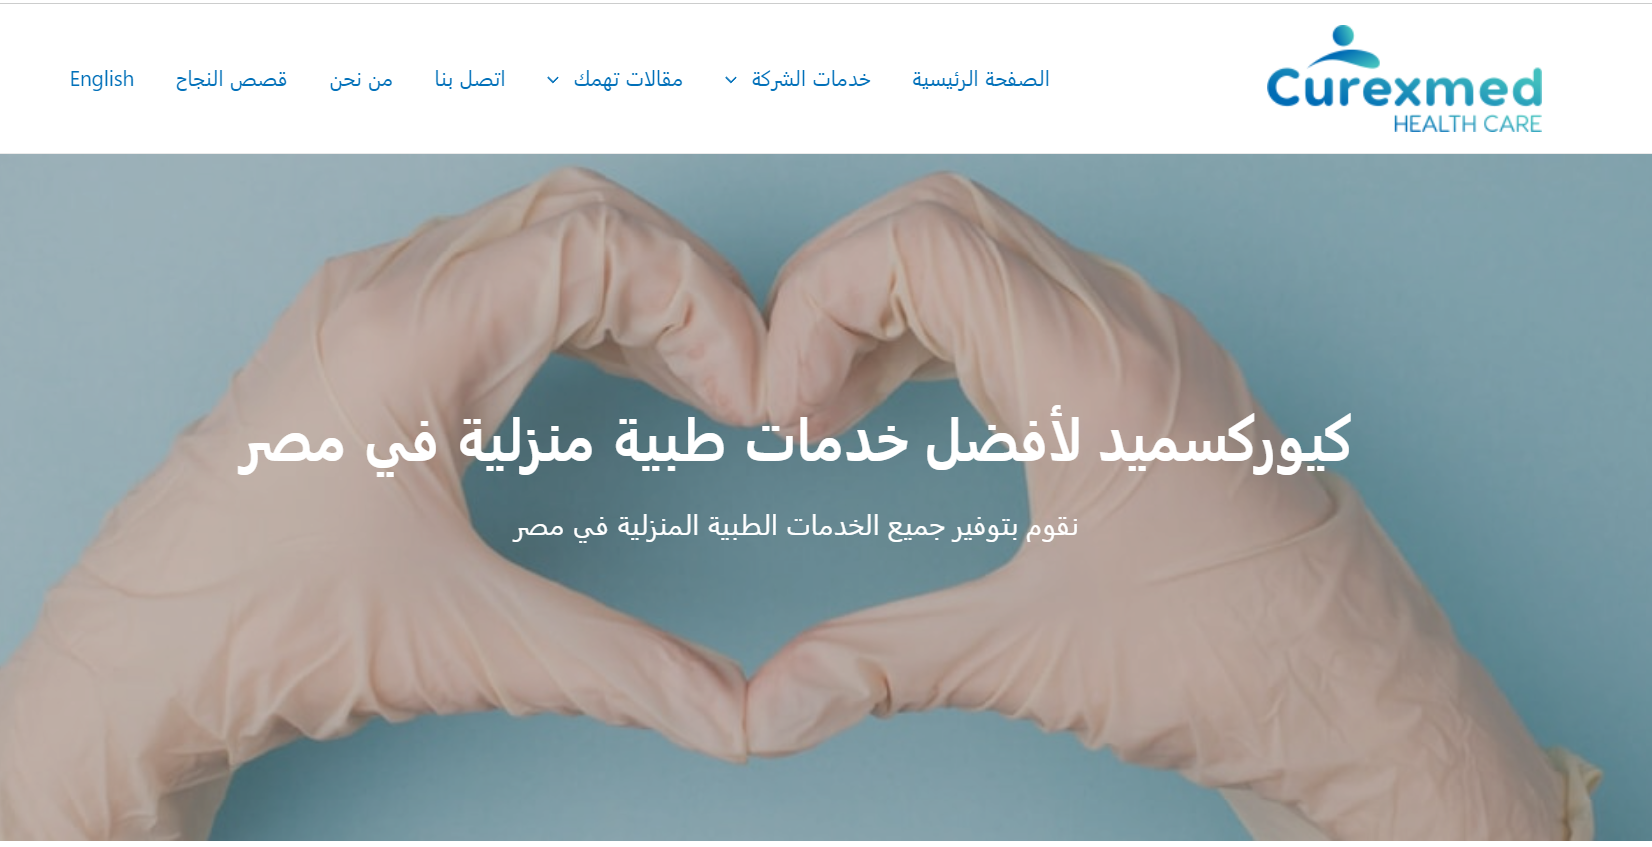 شركة كيوركسميد أفضل مقدم لخدمات دكتور زيارة منزلية في مصر